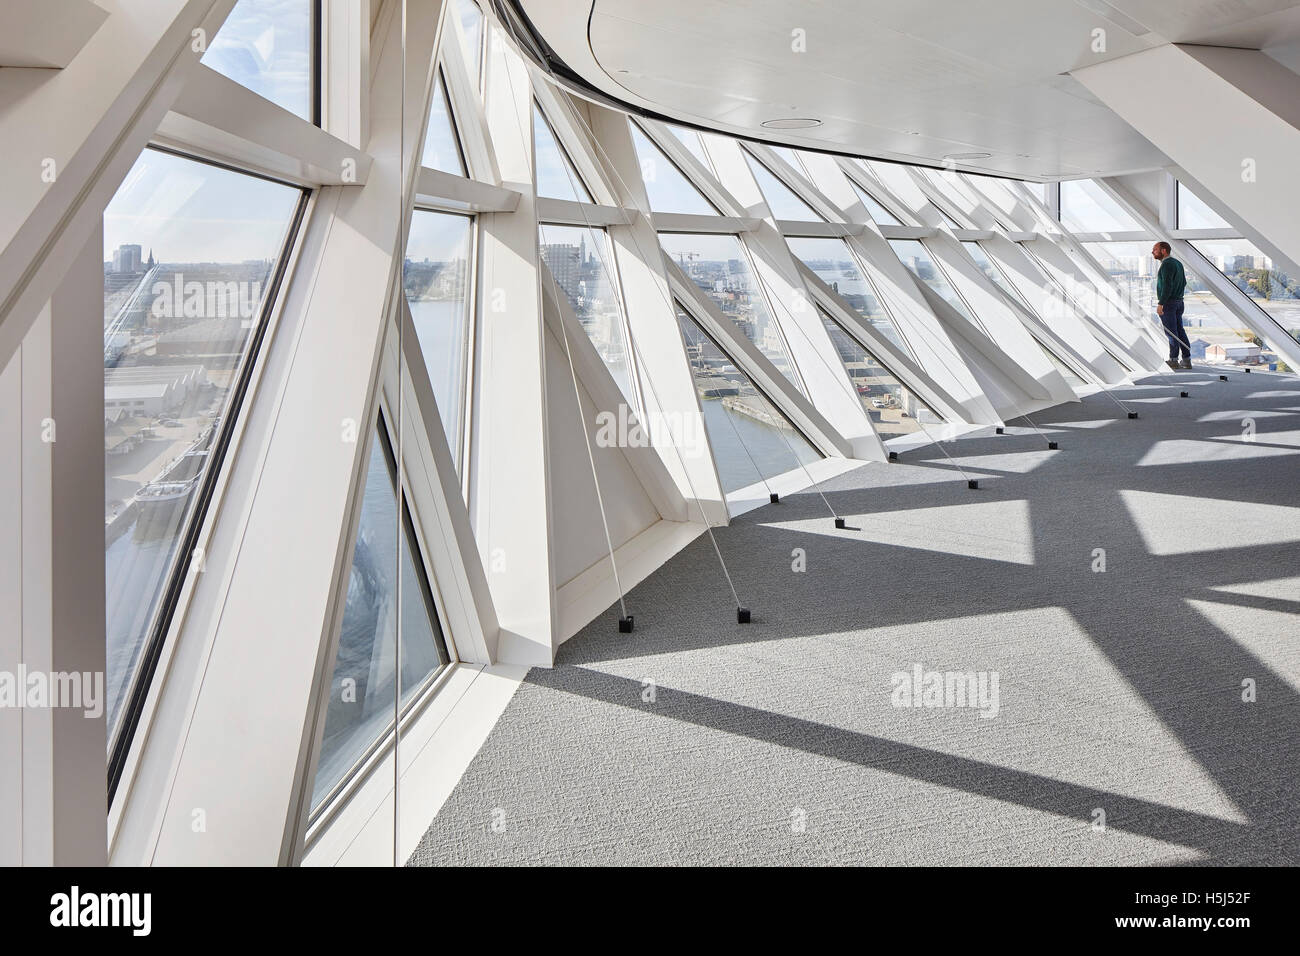 Corridoio con finestra triangolare riquadri. Casa porta ad Anversa, Belgio. Architetto: Zaha Hadid Architects, 2016. Foto Stock